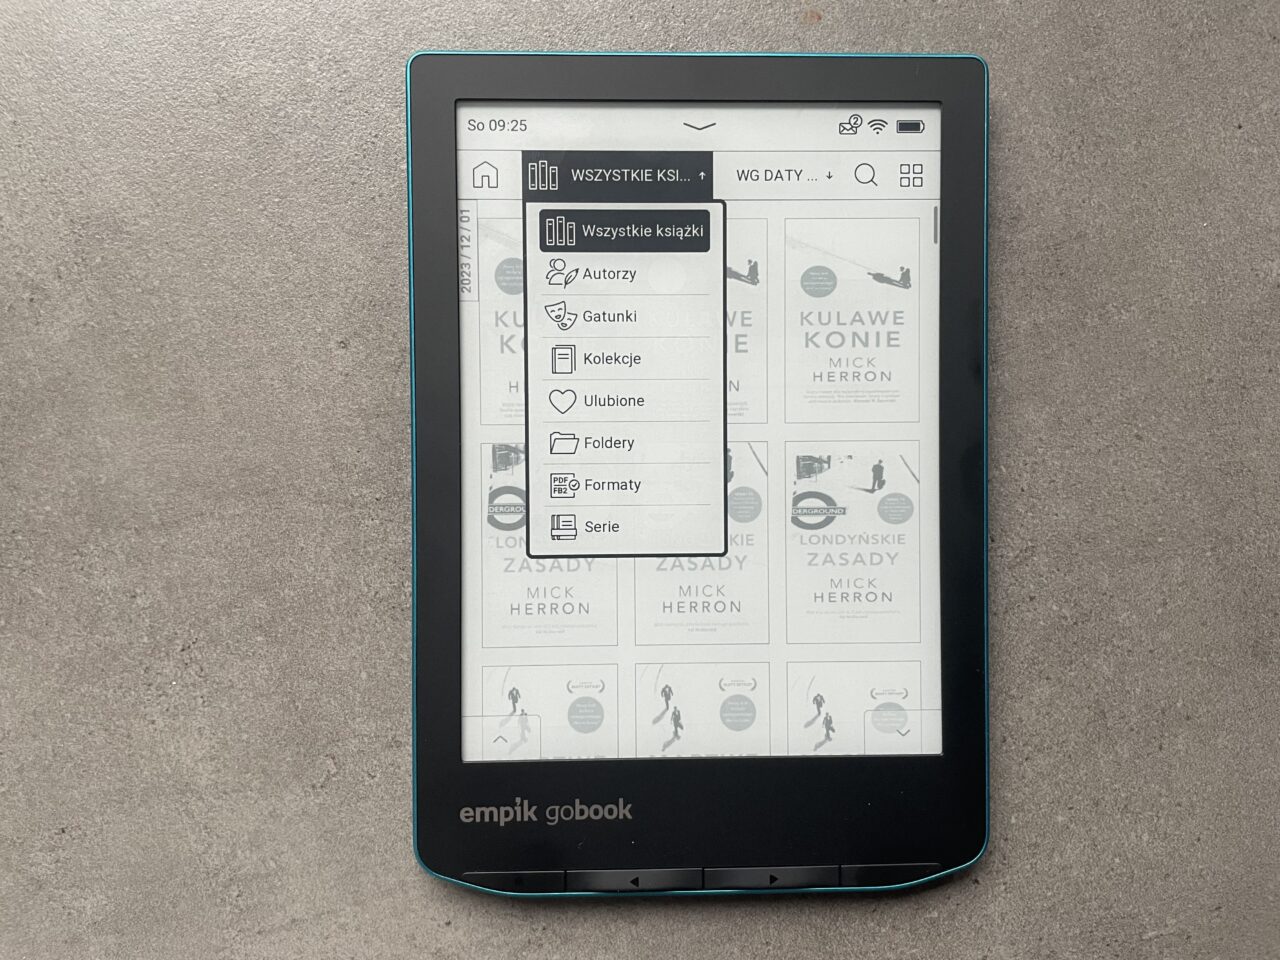 Czytnik ebooków marki Empik GoBook wyświetlający interfejs użytkownika z listą e-książek, położony na szarym tle.